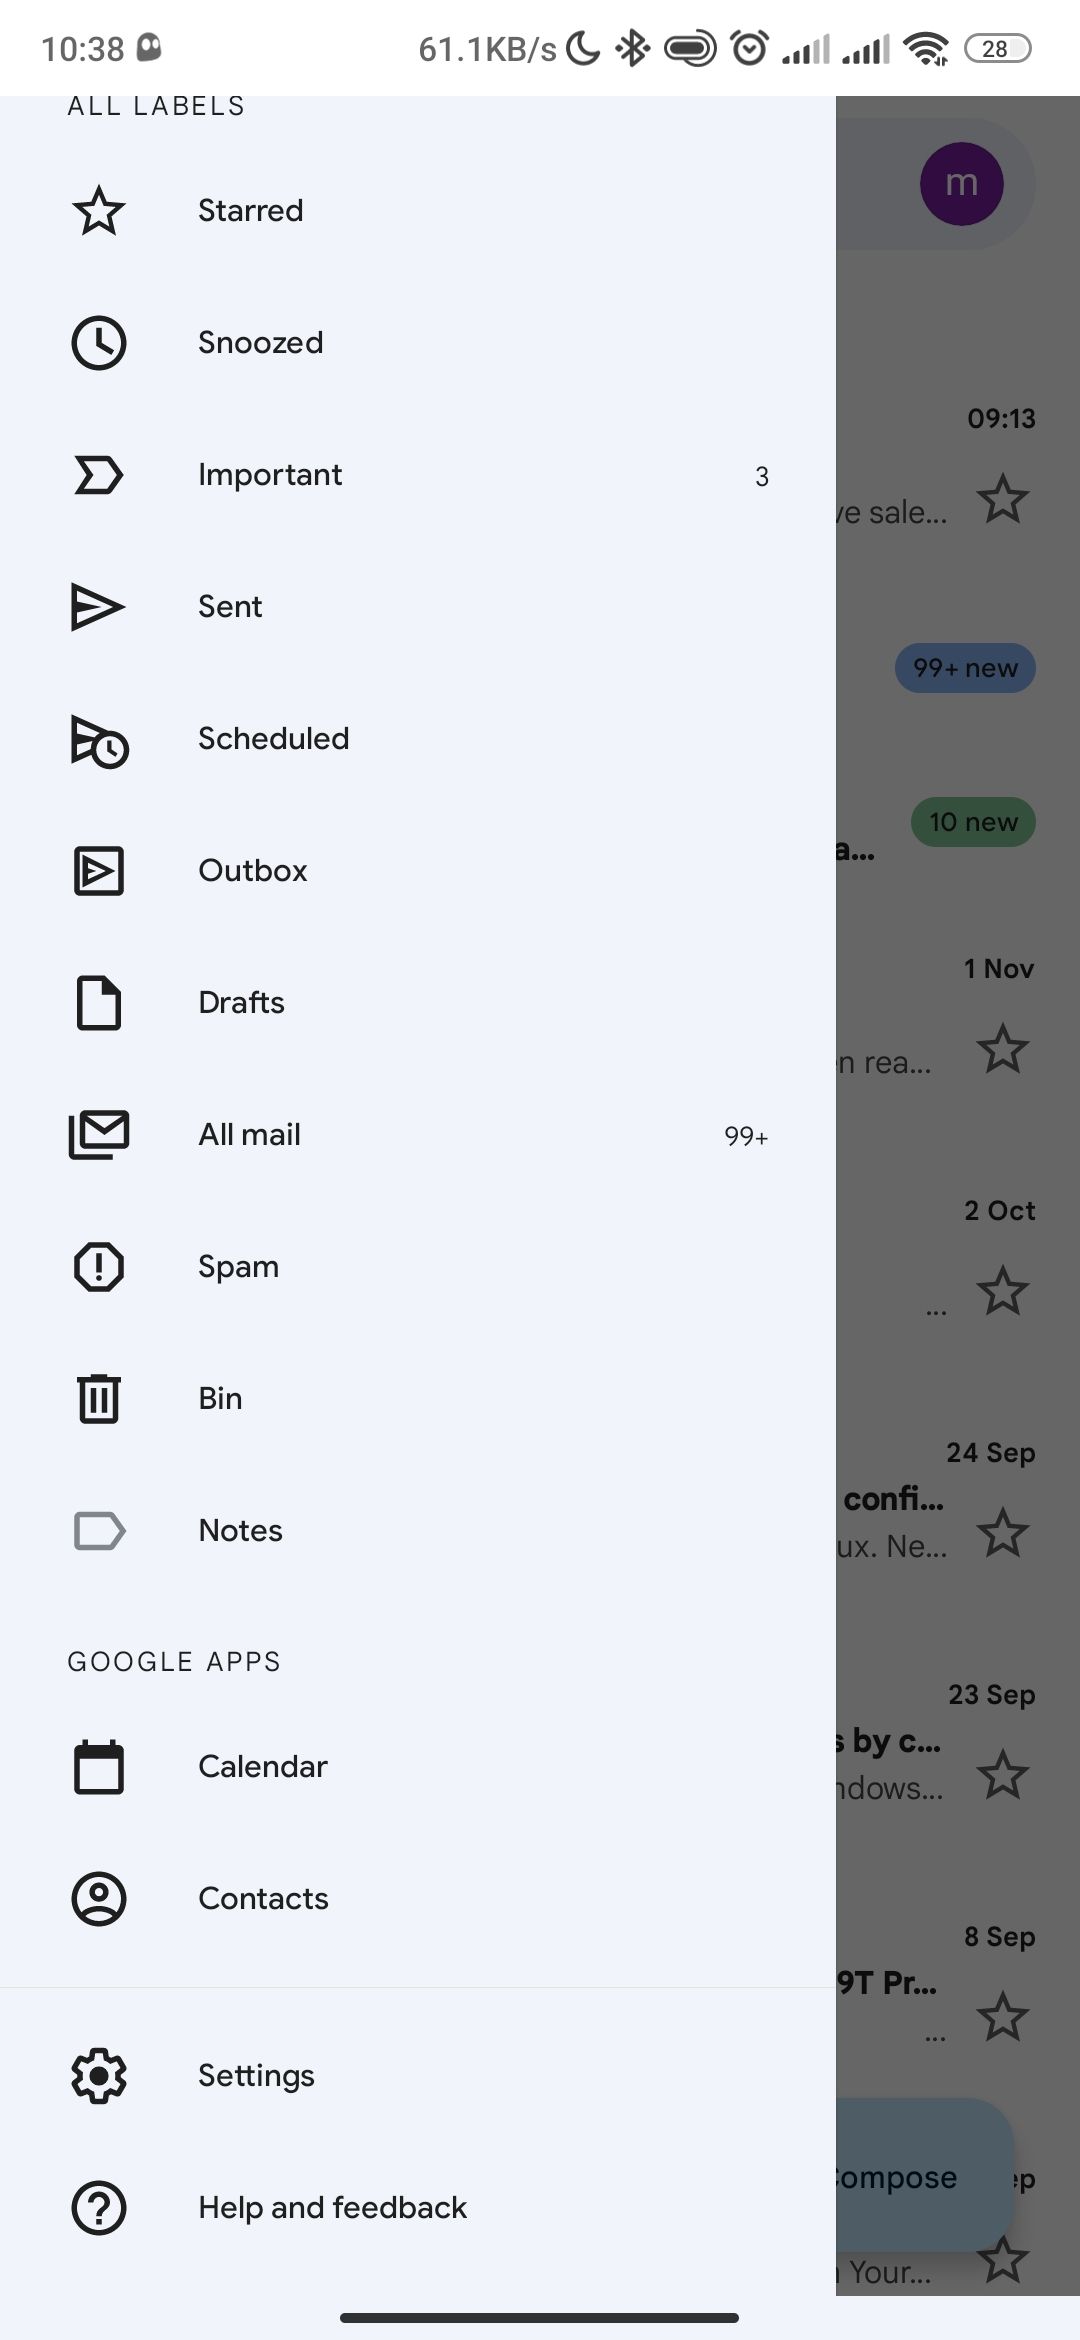 The hamburger menu in Gmail Android